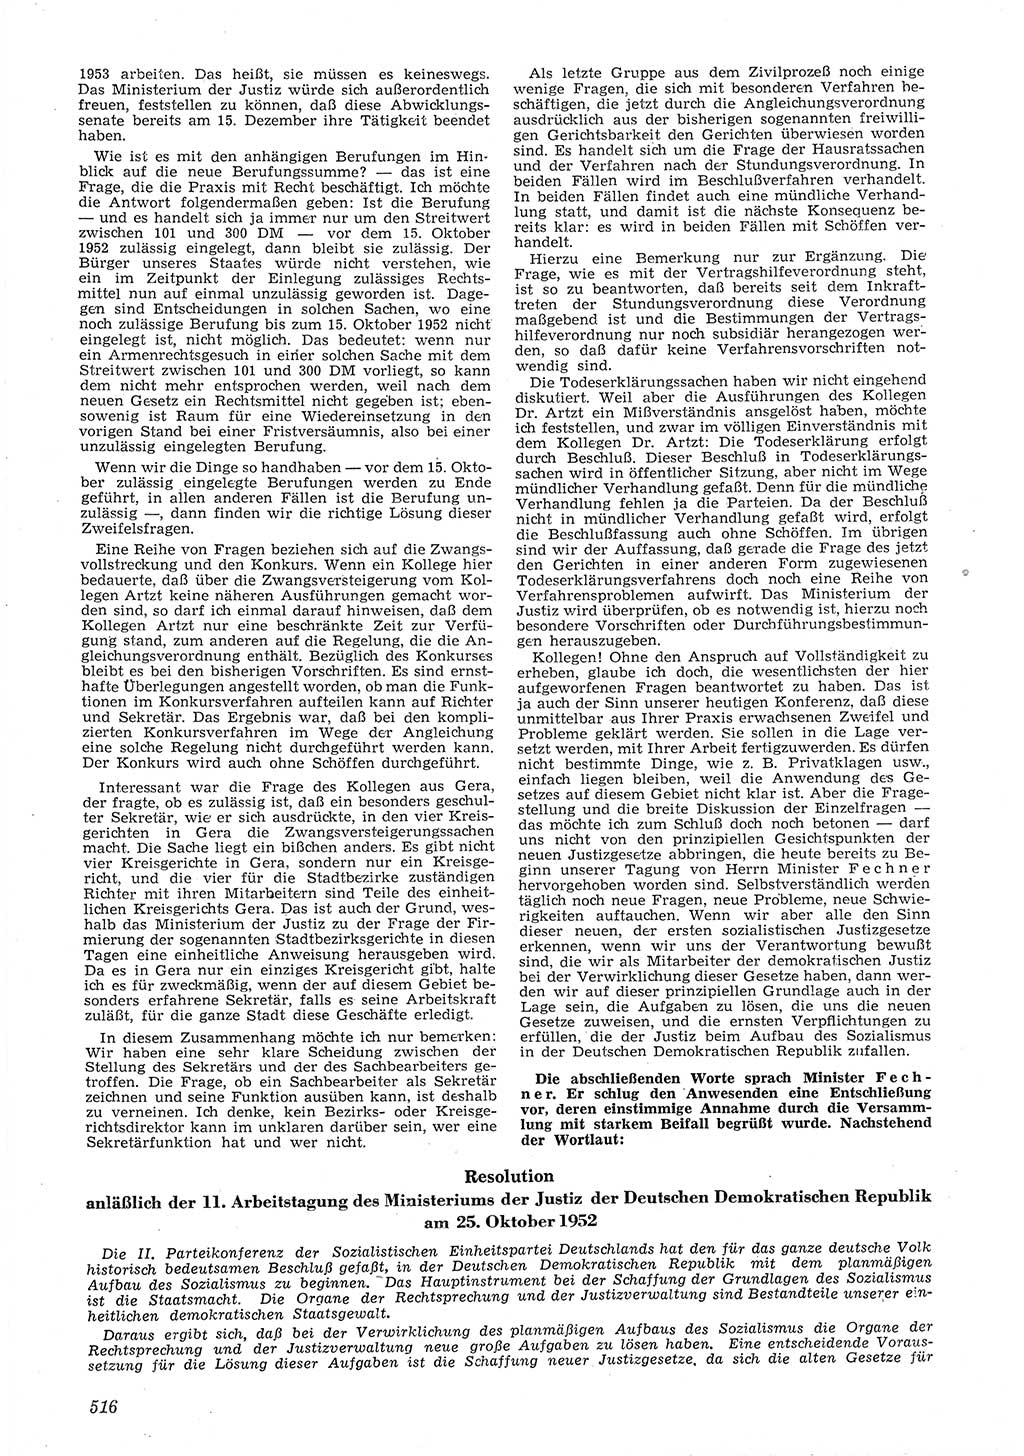 Neue Justiz (NJ), Zeitschrift für Recht und Rechtswissenschaft [Deutsche Demokratische Republik (DDR)], 6. Jahrgang 1952, Seite 516 (NJ DDR 1952, S. 516)